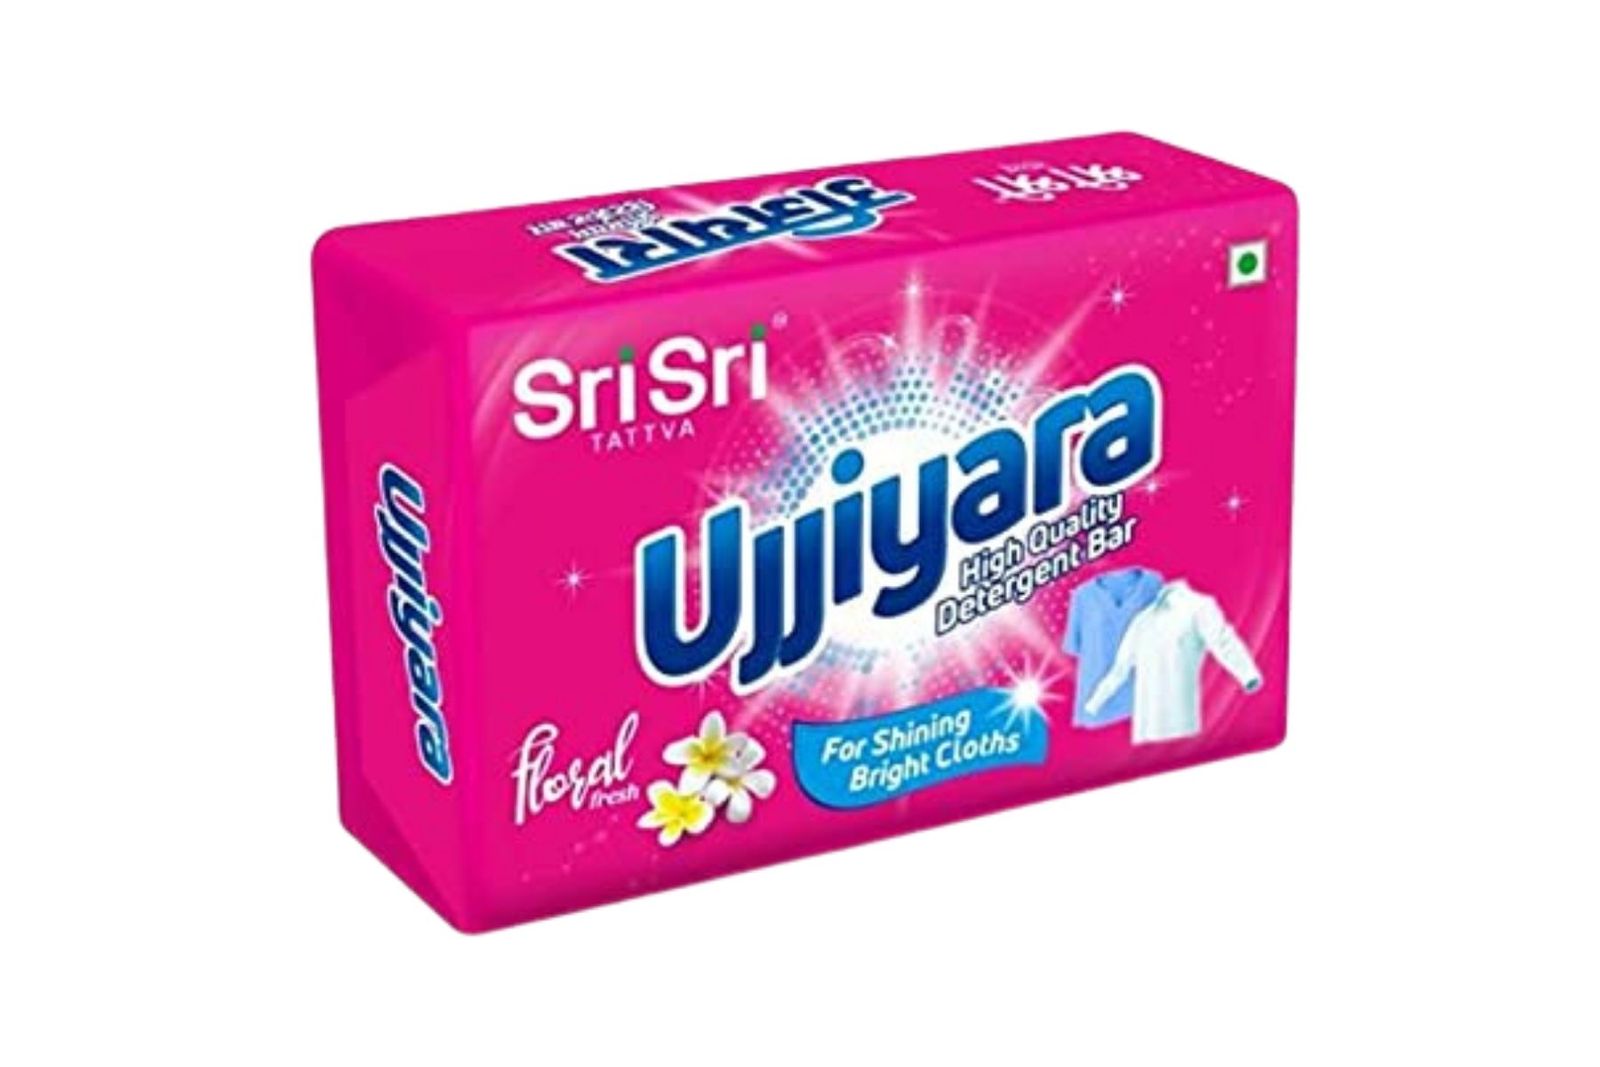 Sri Sri Tattva Ujjiyara Detergent Bar